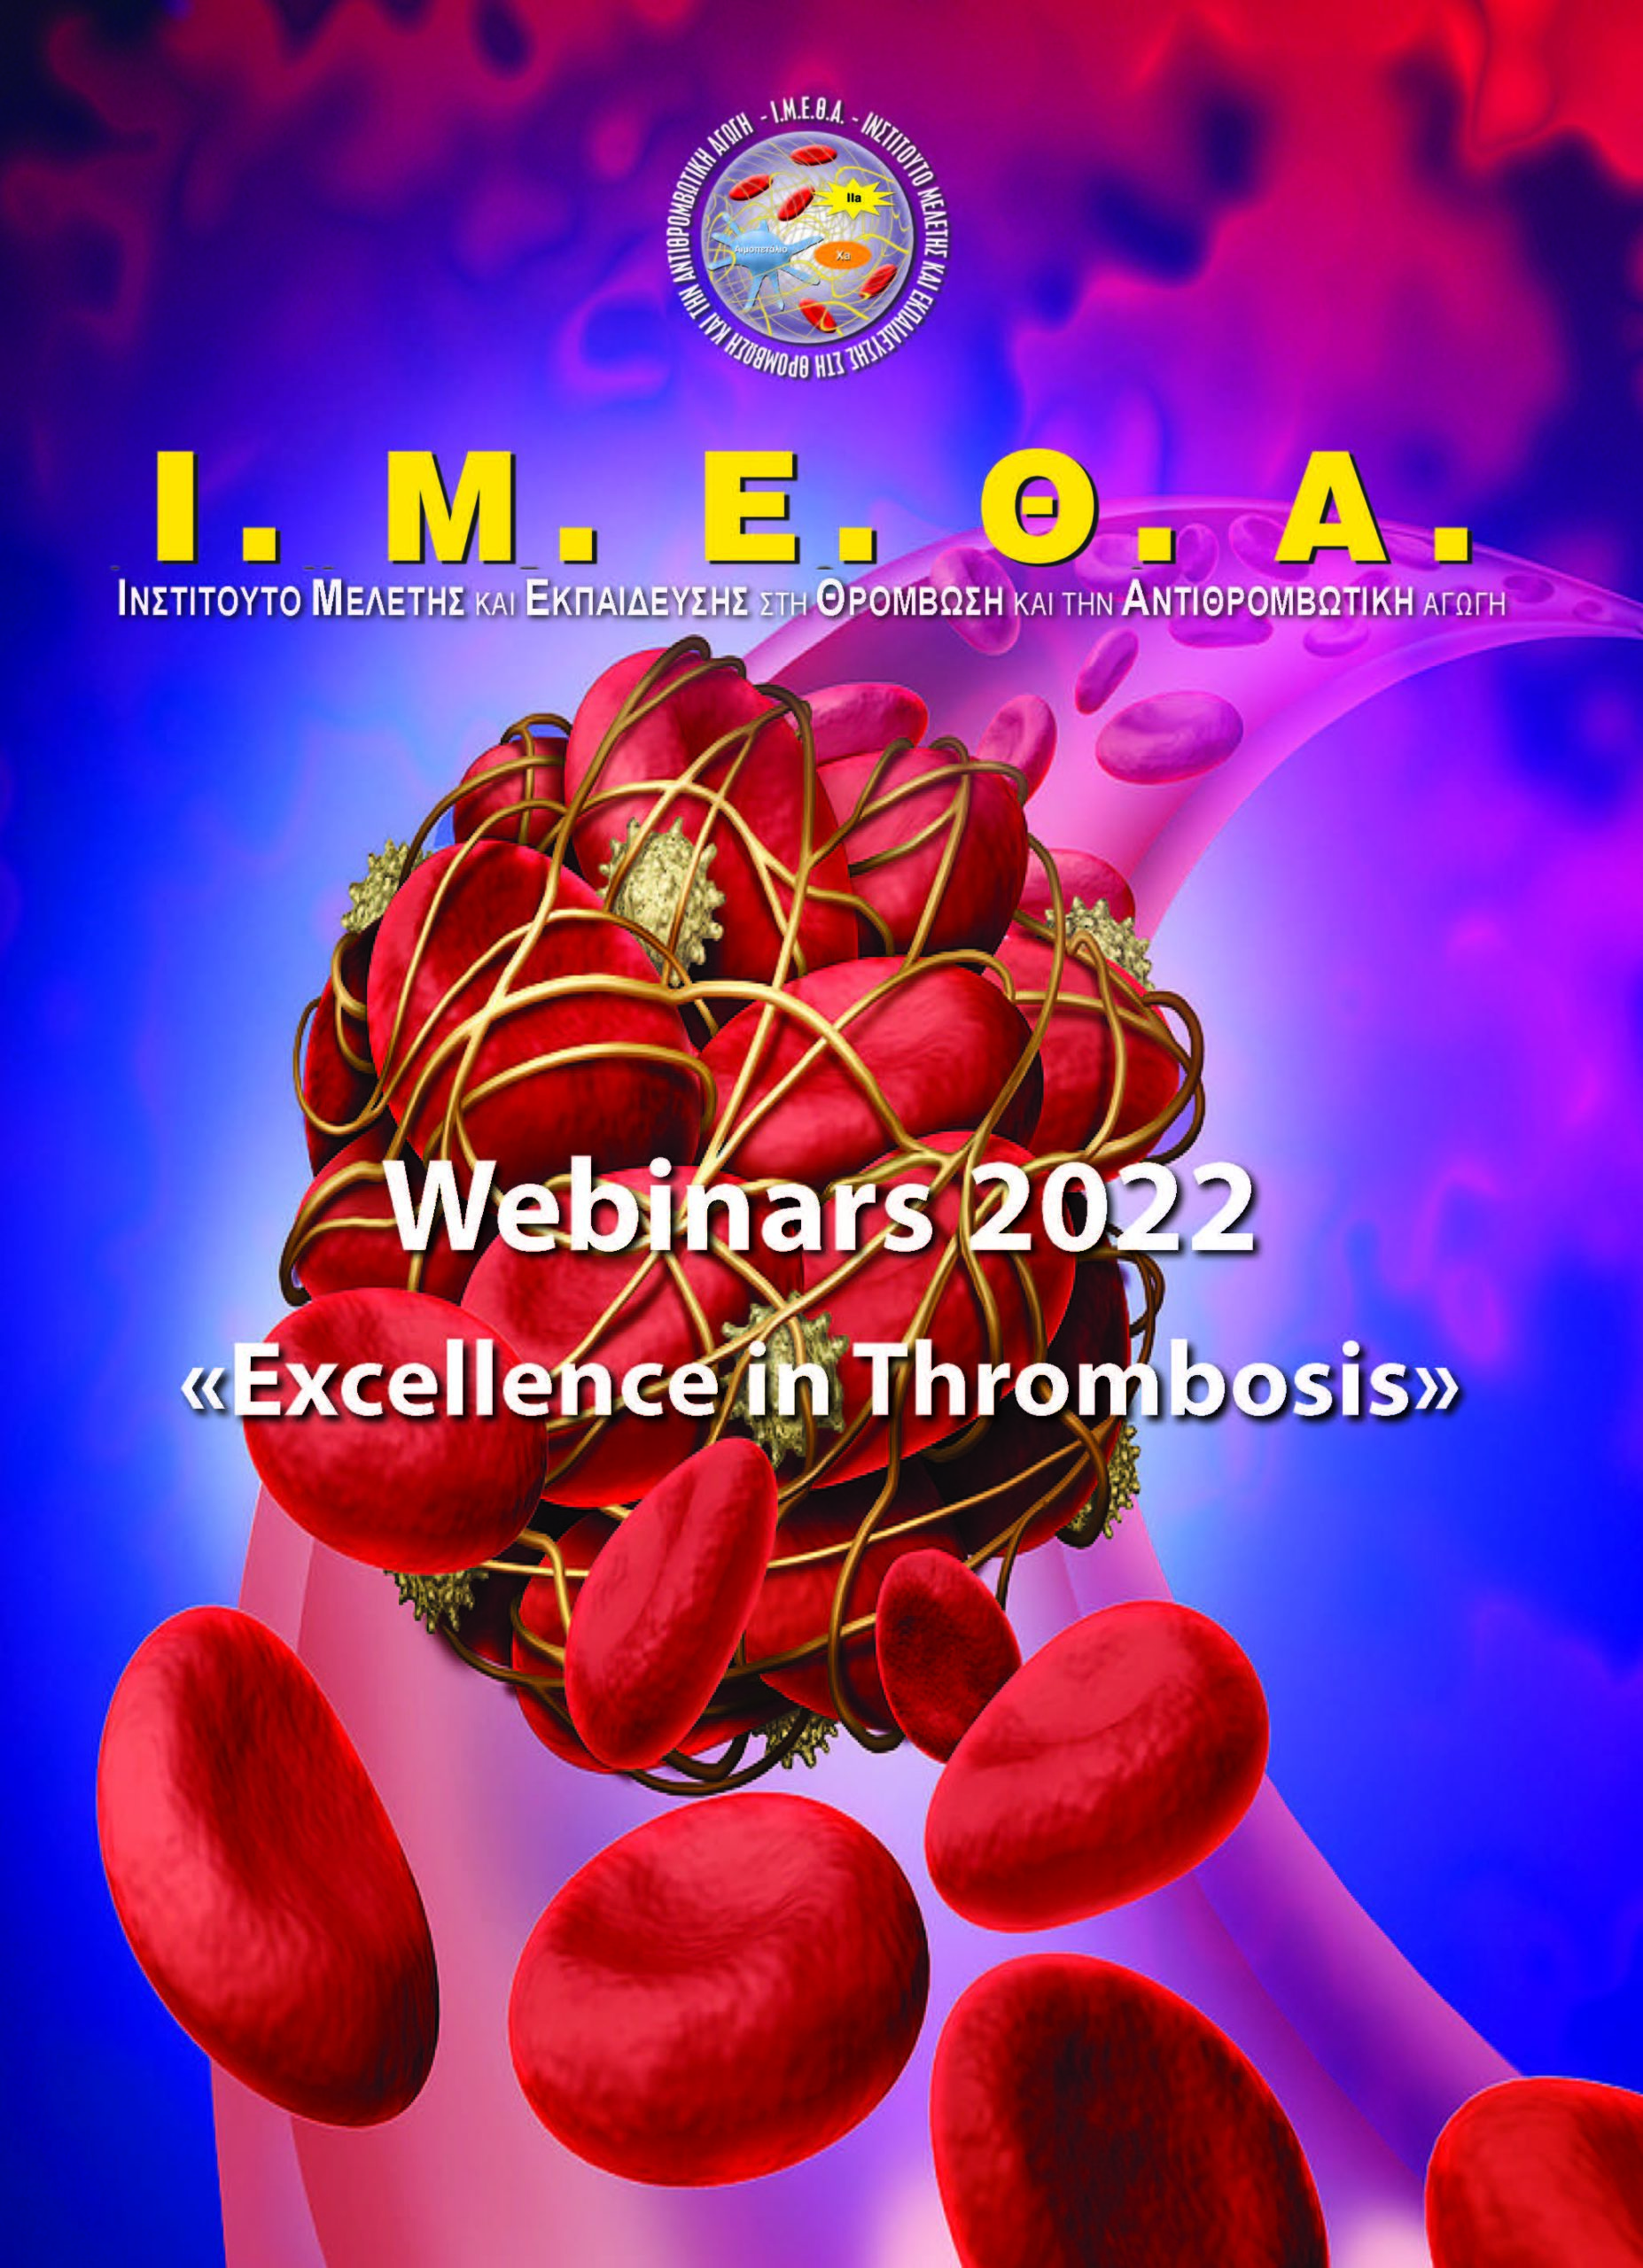 10ο Webinar Ι.Μ.Ε.Θ.Α. “Excellence in Thrombosis” - Ε. Βαβουρανάκης (Πέμπτη 16/6/2022) -